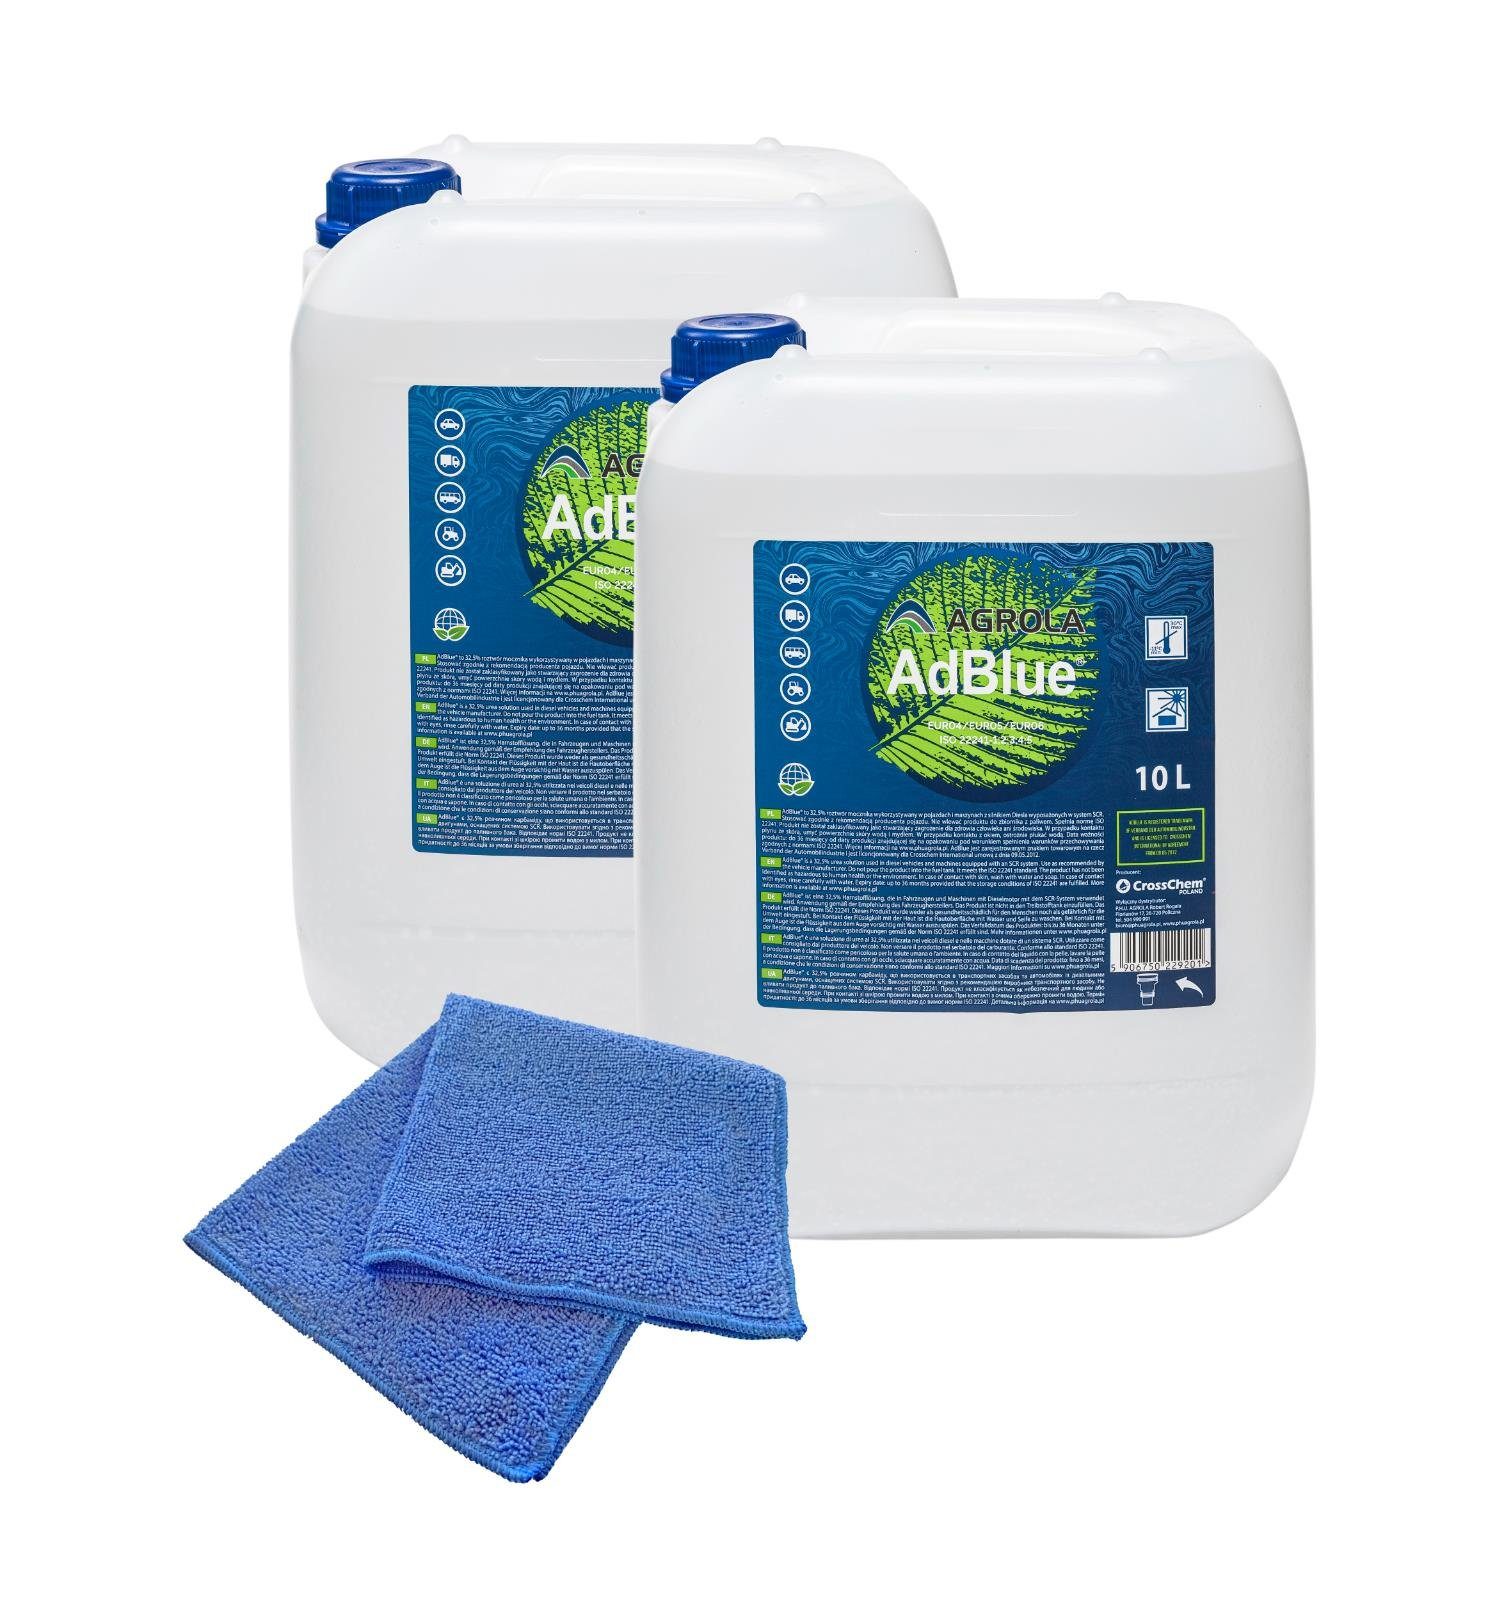 AdBlue® Kanister, mit Ausgießer